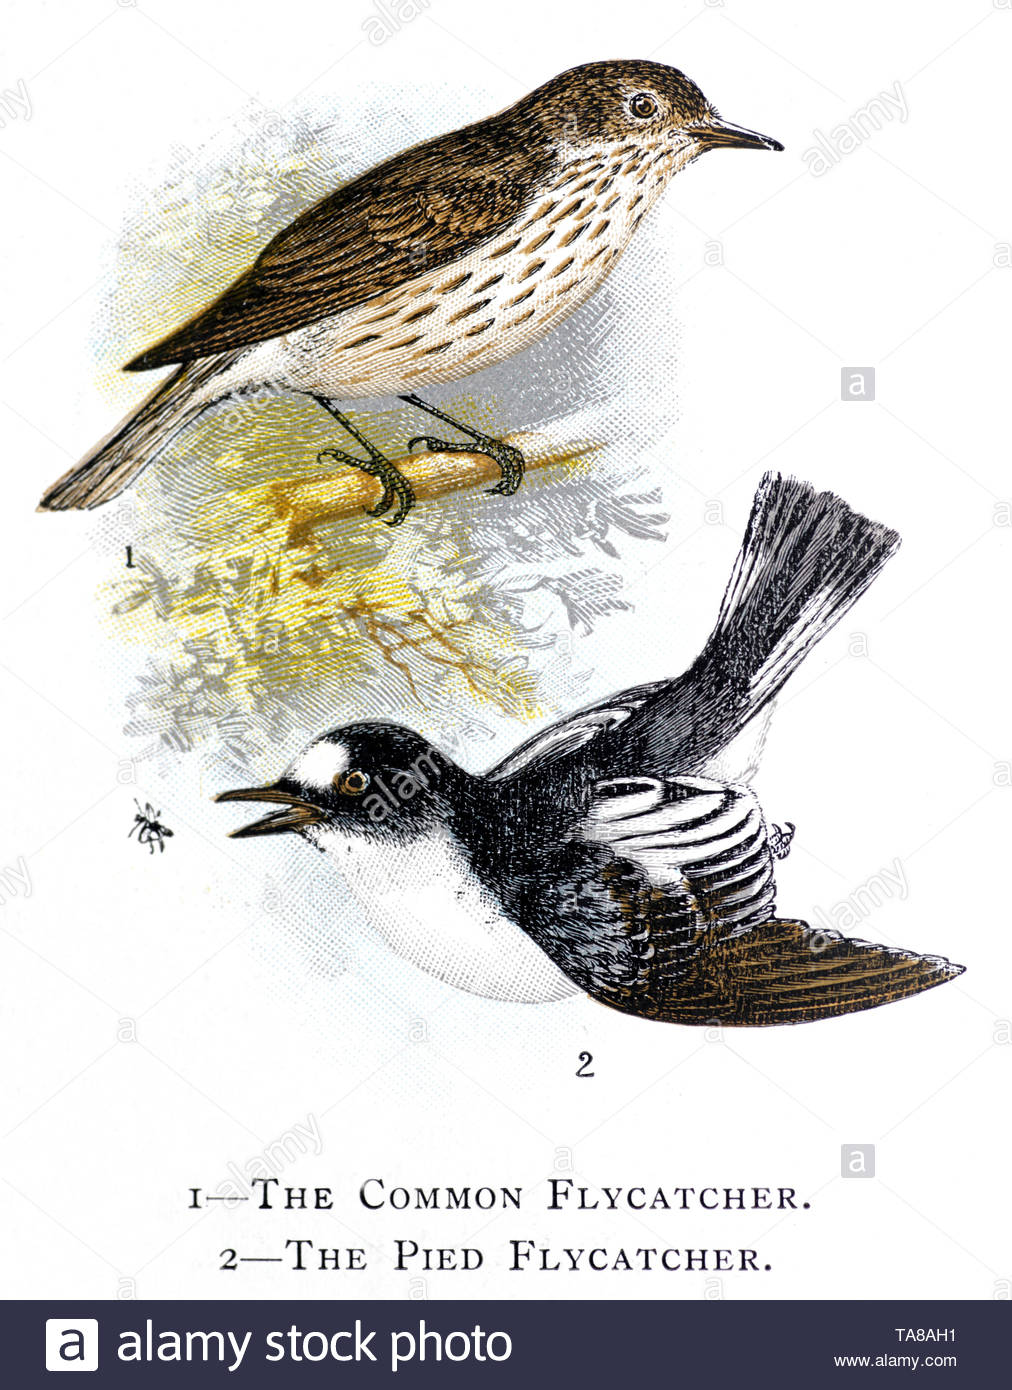 Common Spotted Flycatcher (Muscicapa striata) e Pied Flycatcher (Ficedula hypoleuca), Illustrazione vintage pubblicato in 1898 Foto Stock